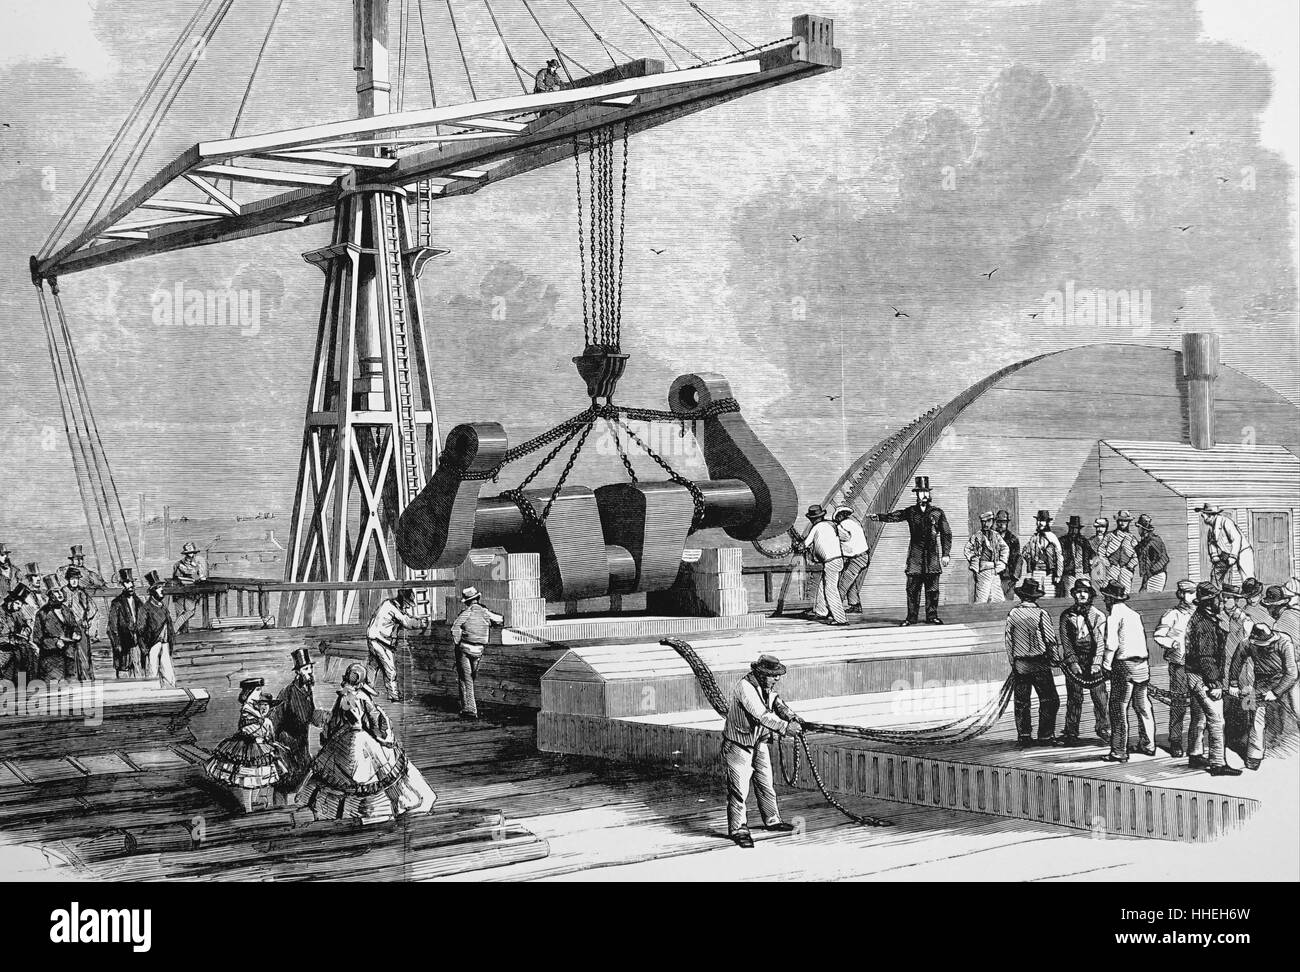 Kupferstich mit der Darstellung der "Great Eastern" während der Erstellung der Atlantic Telegraph verwendet. Die zwischenliegende Platte - Welle auf das Deck abgesenkt werden. Vom 19. Jahrhundert Stockfoto